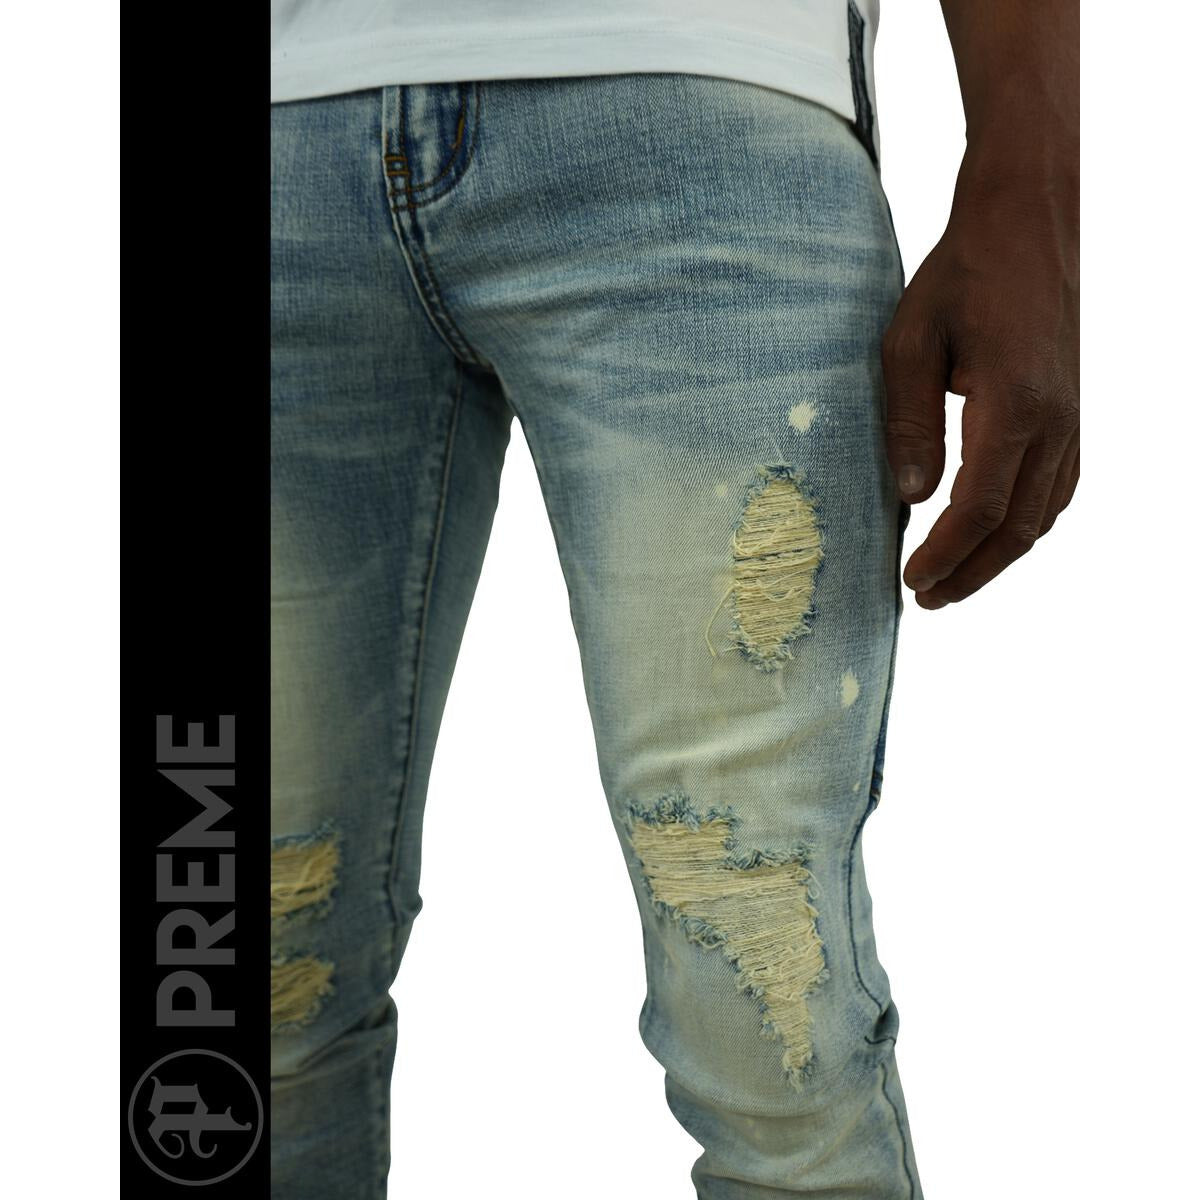 PREME Indigo Wash Ripped Jeans (PR-WB-1206)